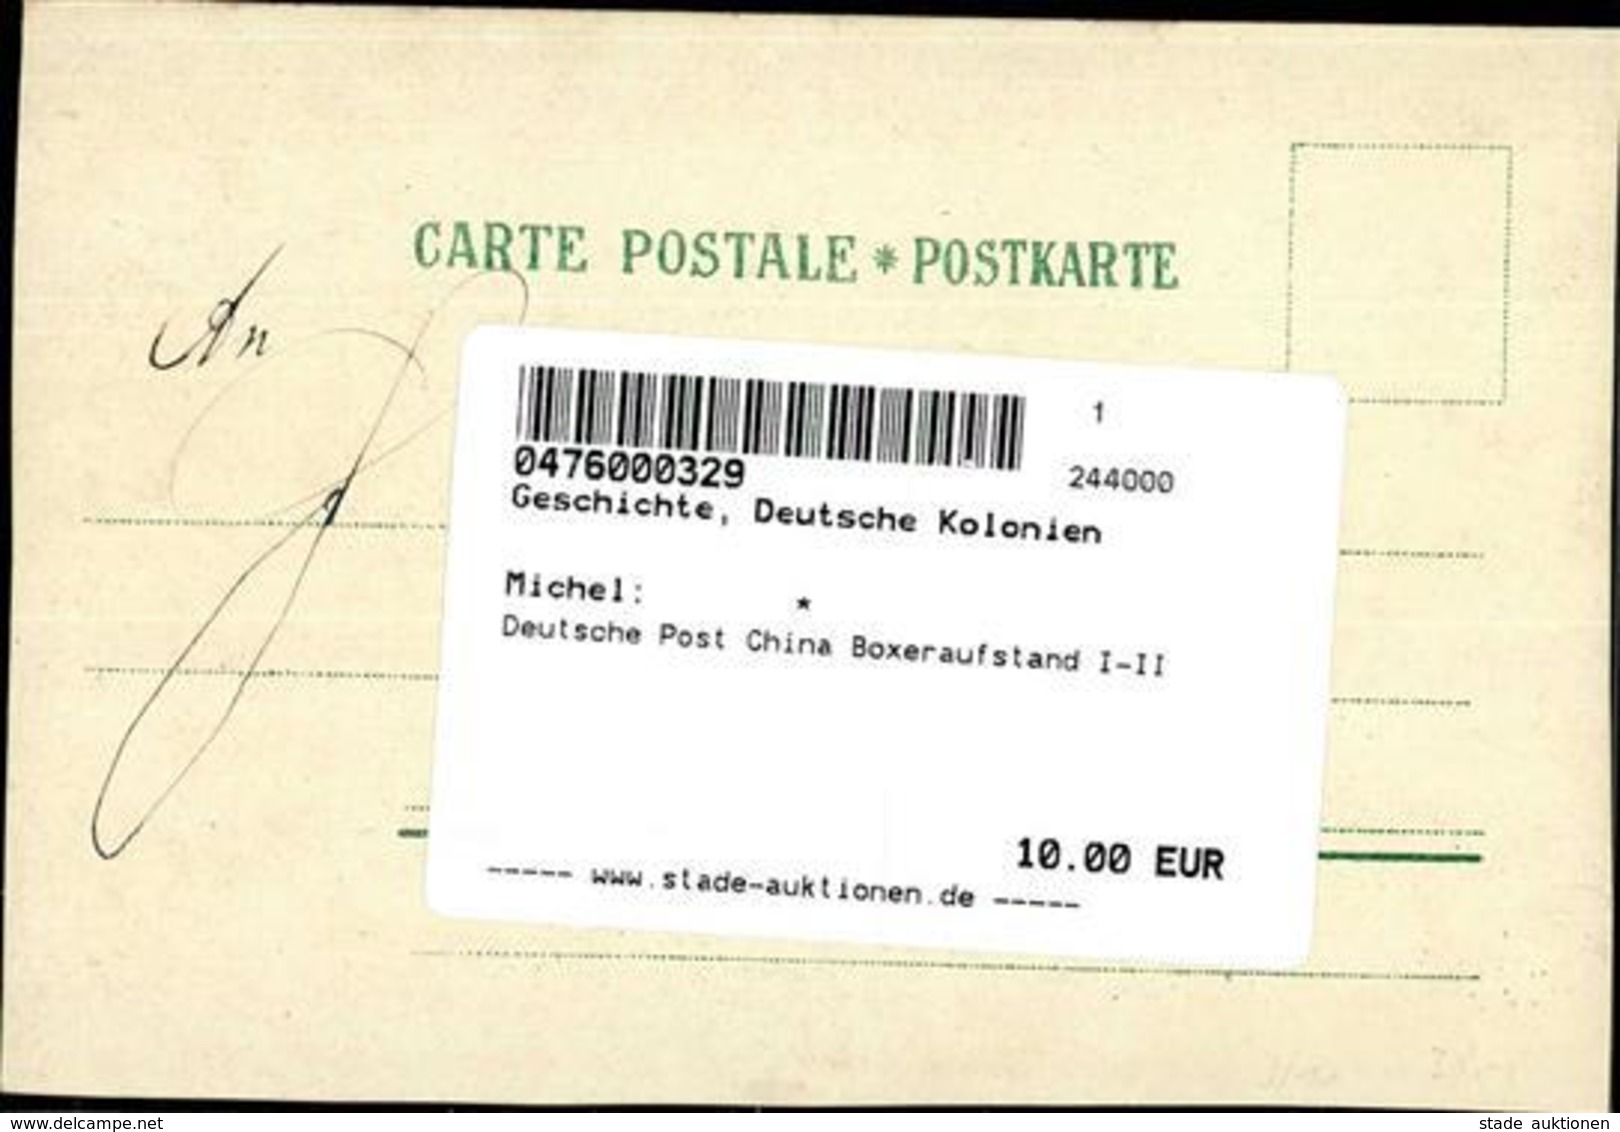 Deutsche Post China Boxeraufstand (II Beschnitten) - History